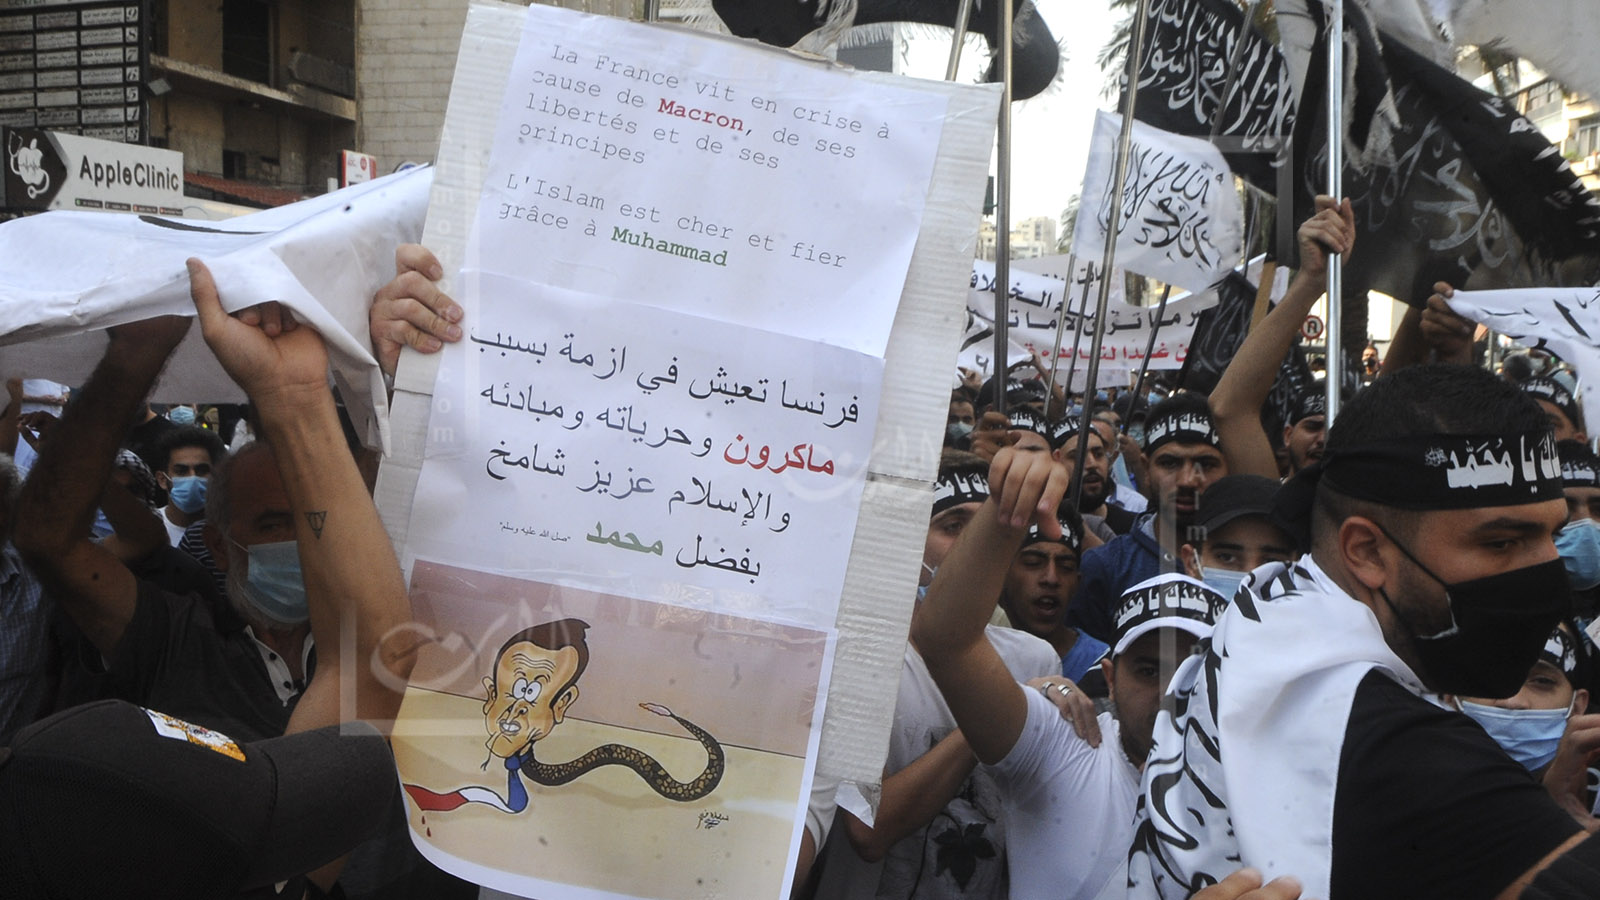 مجموعة شيعية تتظاهر الاحد ضد"العلمانية الفرنسية المتوحشة"